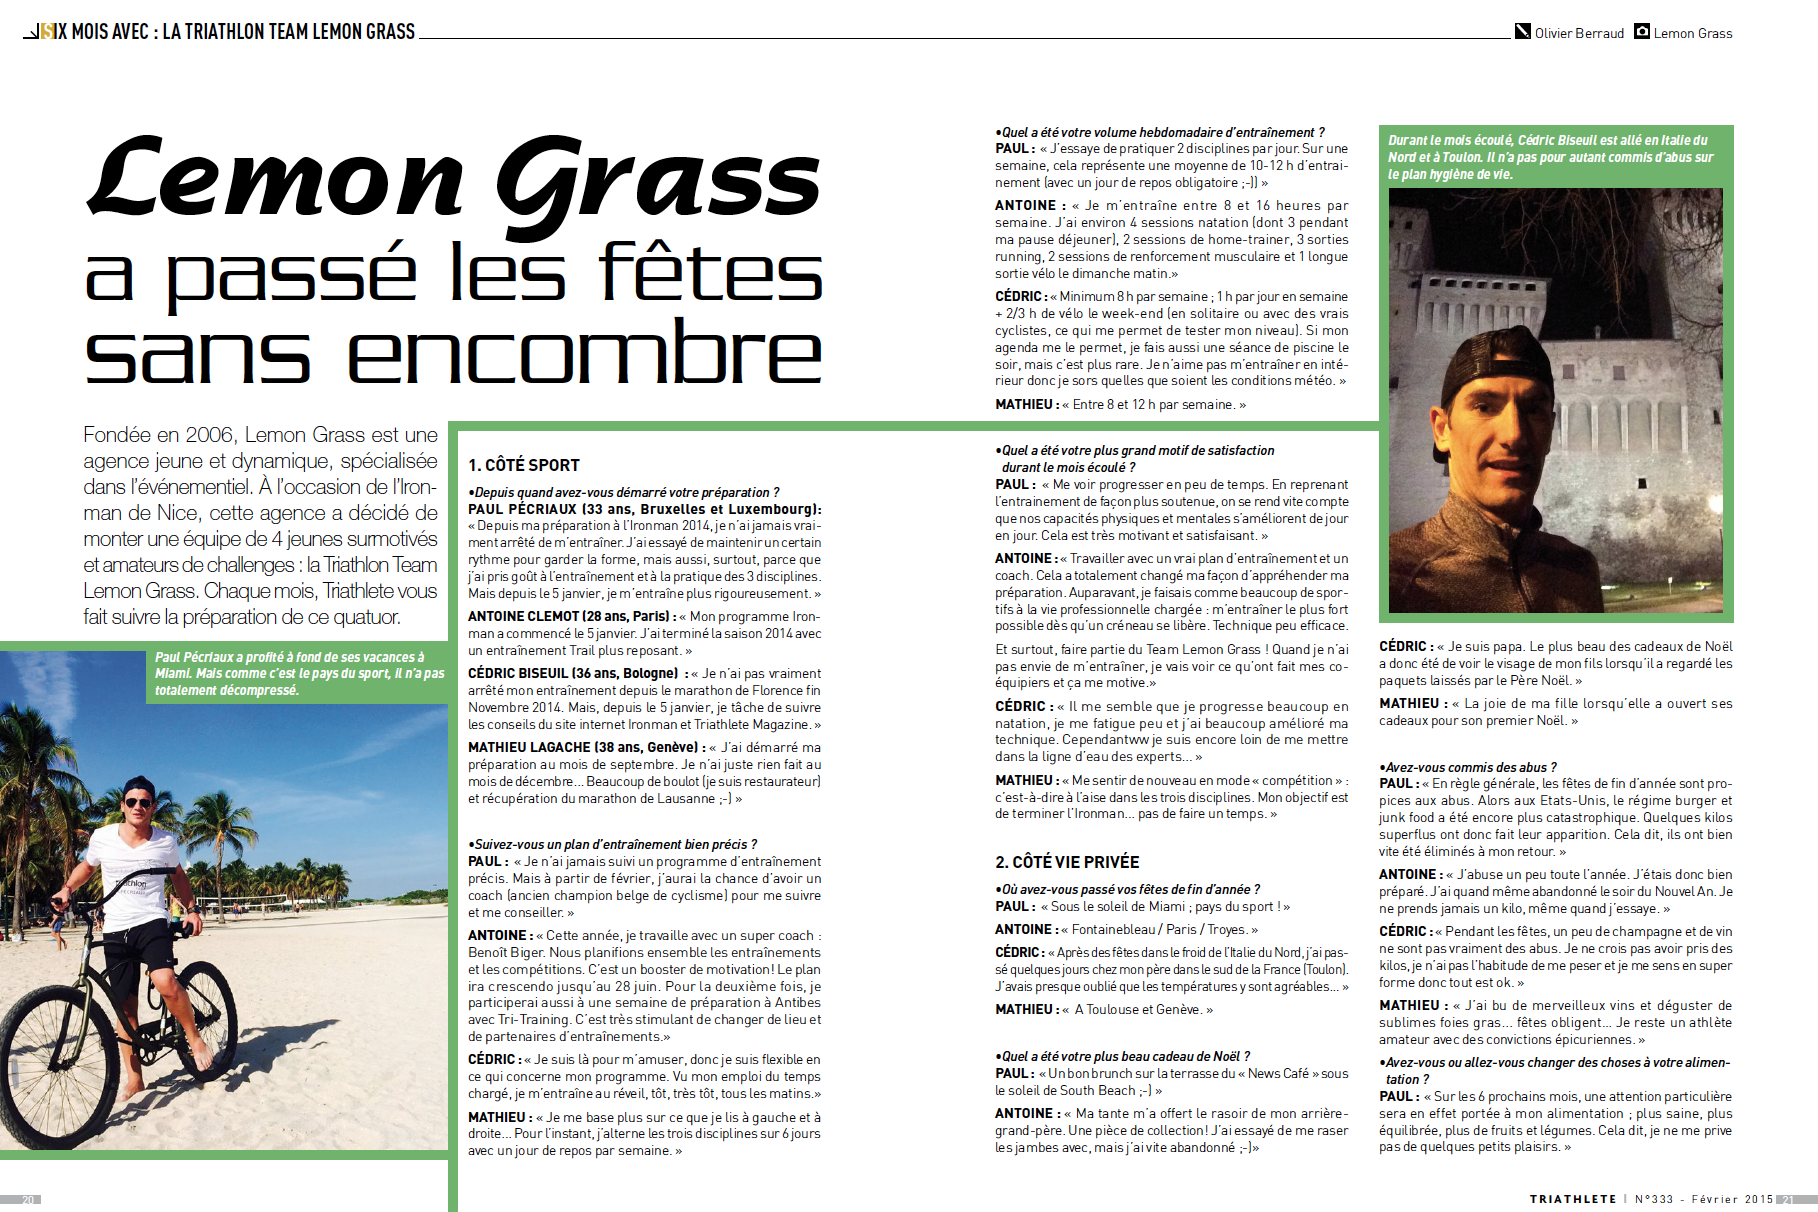 "Lemon Grass a passé les fêtes sans encombre" – Article Triathlète Magazine – Février 2015